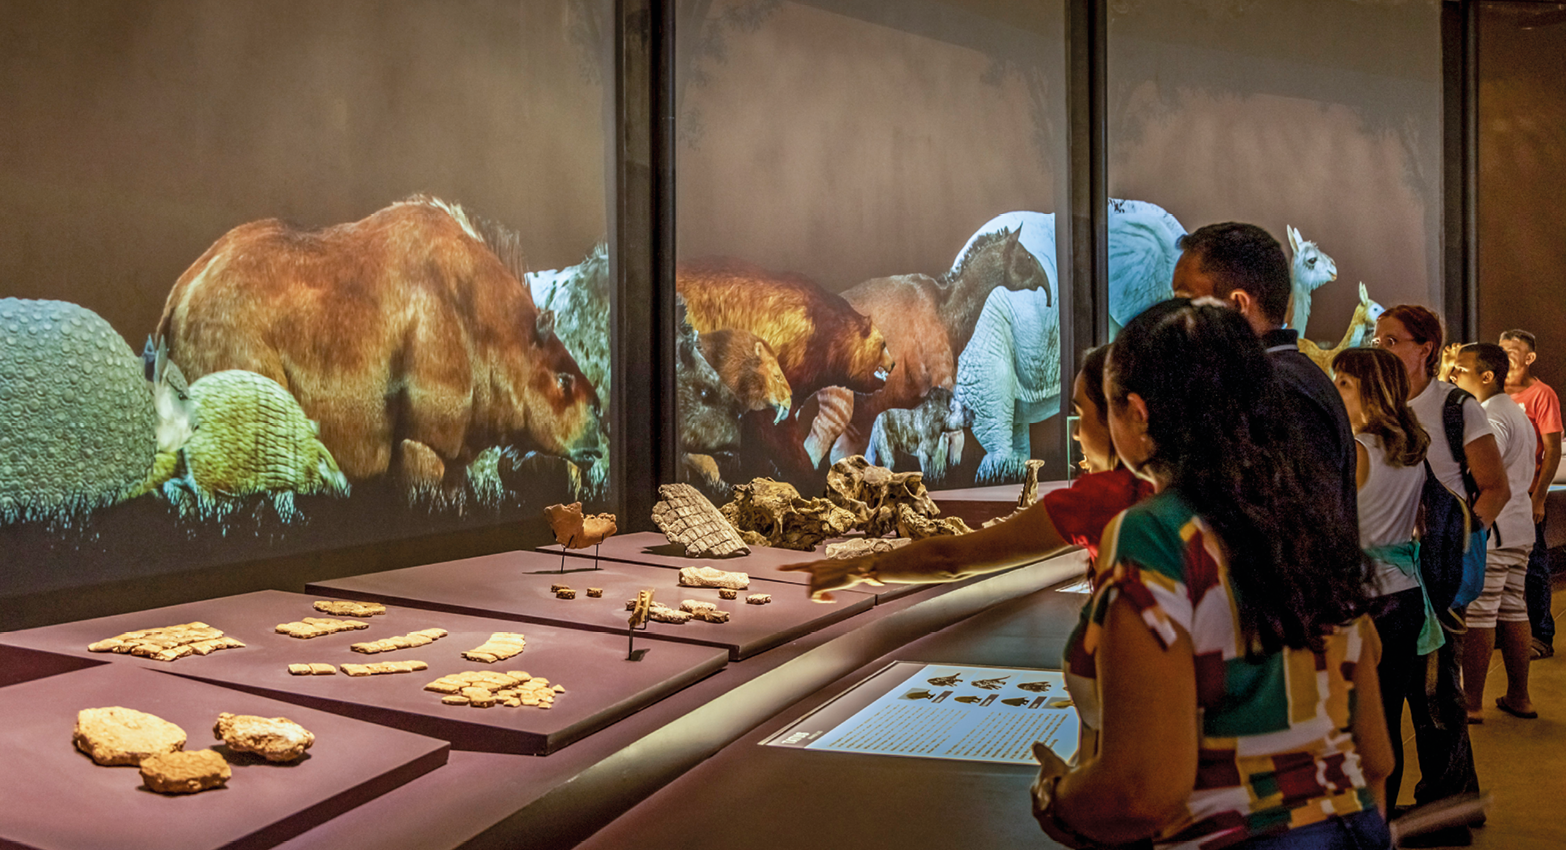 Fotografia. Diversas pessoas estão em pé diante de uma mesa com tábuas e objetos e pedras sendo expostos. Ao fundo, há três telas com molduras pretas e imagens de reproduções de animais.